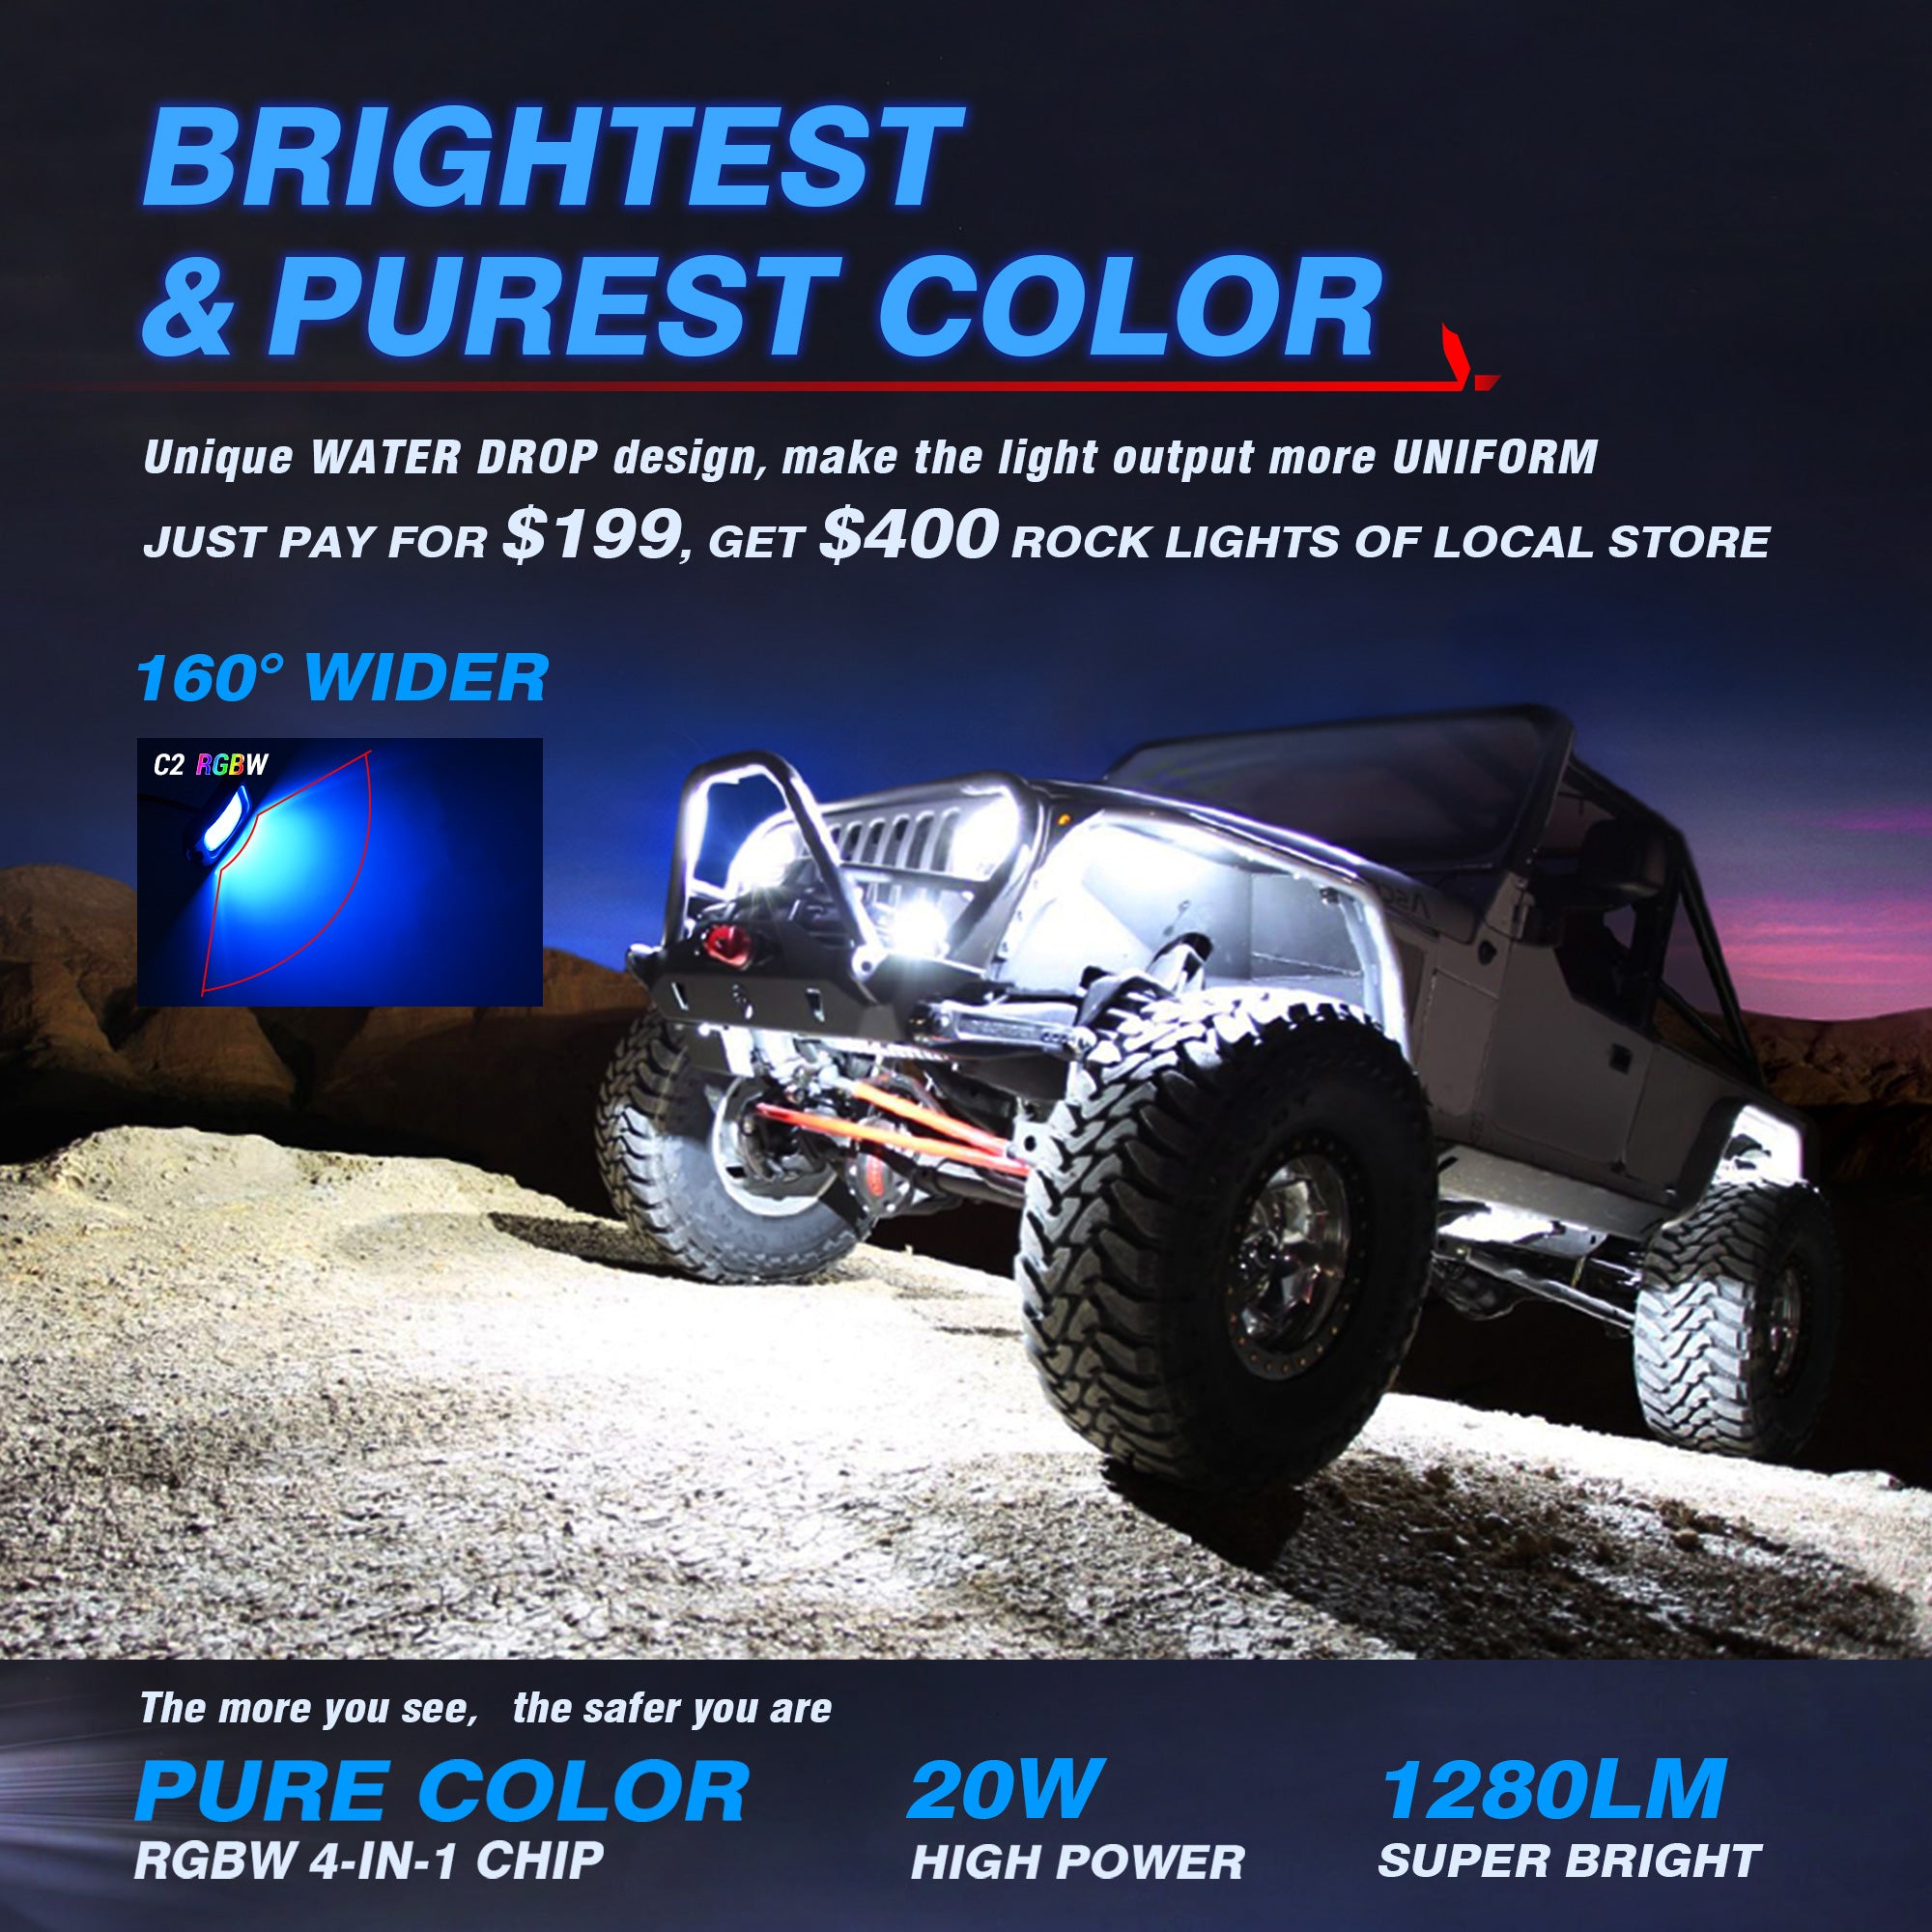 C2 Curved RGBW LED Rock Lights - 4 Pods Multicolor Neon LED Light Kit